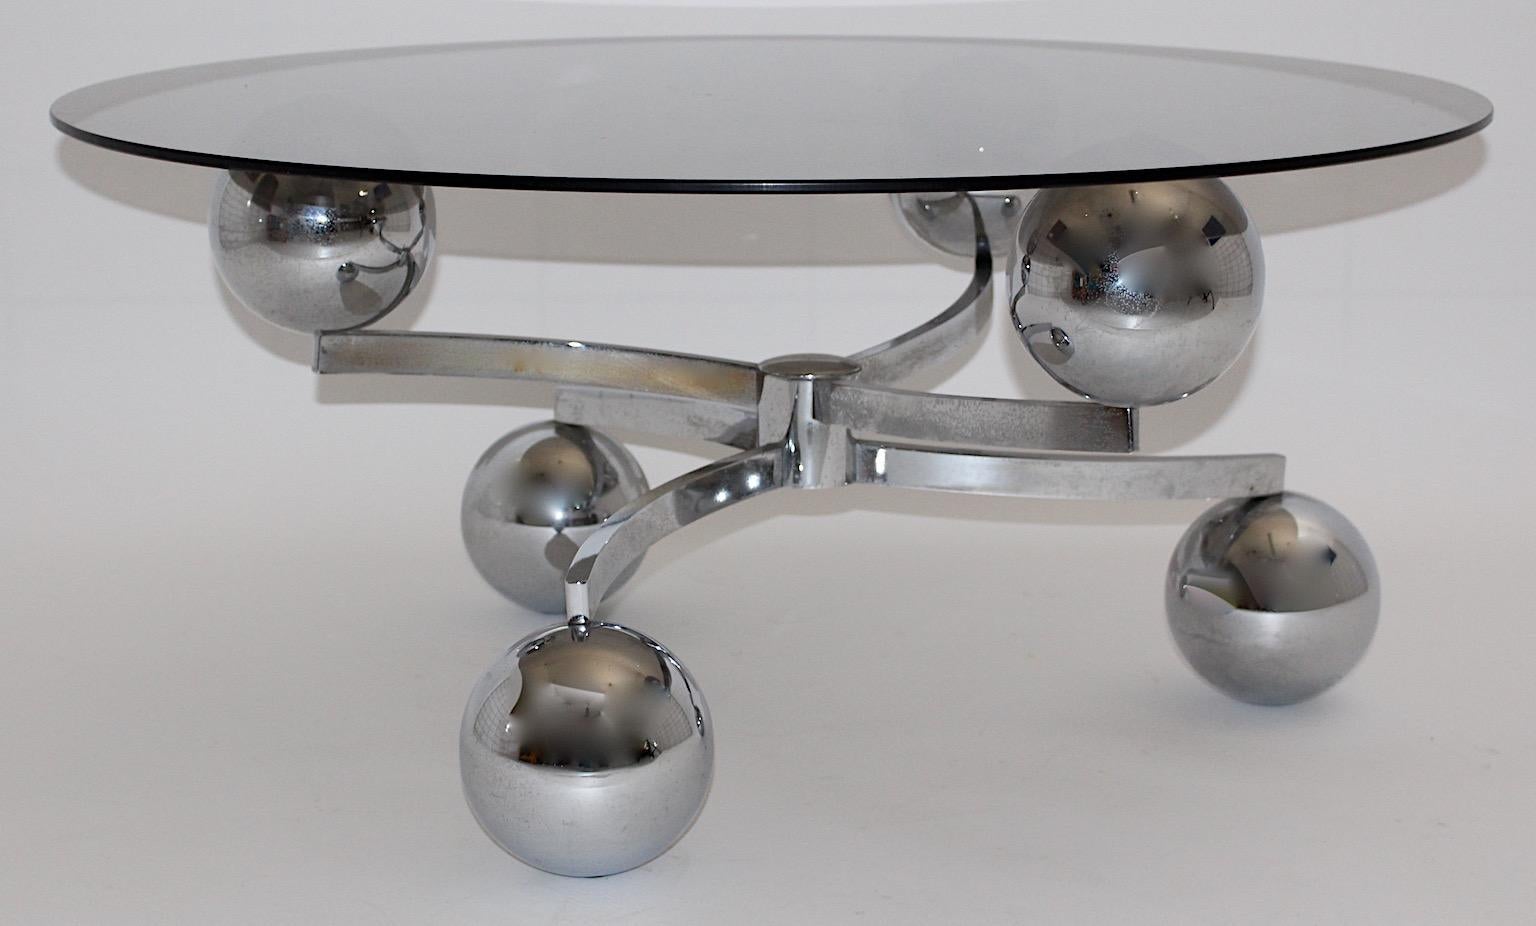 Space Age Vintage Sofa Tisch oder Couchtisch aus verchromtem Metall Sputnik wie mit Glasplatte um 1970.
Ein Sofatisch mit verchromtem Metallsockel, der fantastische Bewegung und Schwung zeigt.
Während der Sockel Kugeln wie Planeten in der